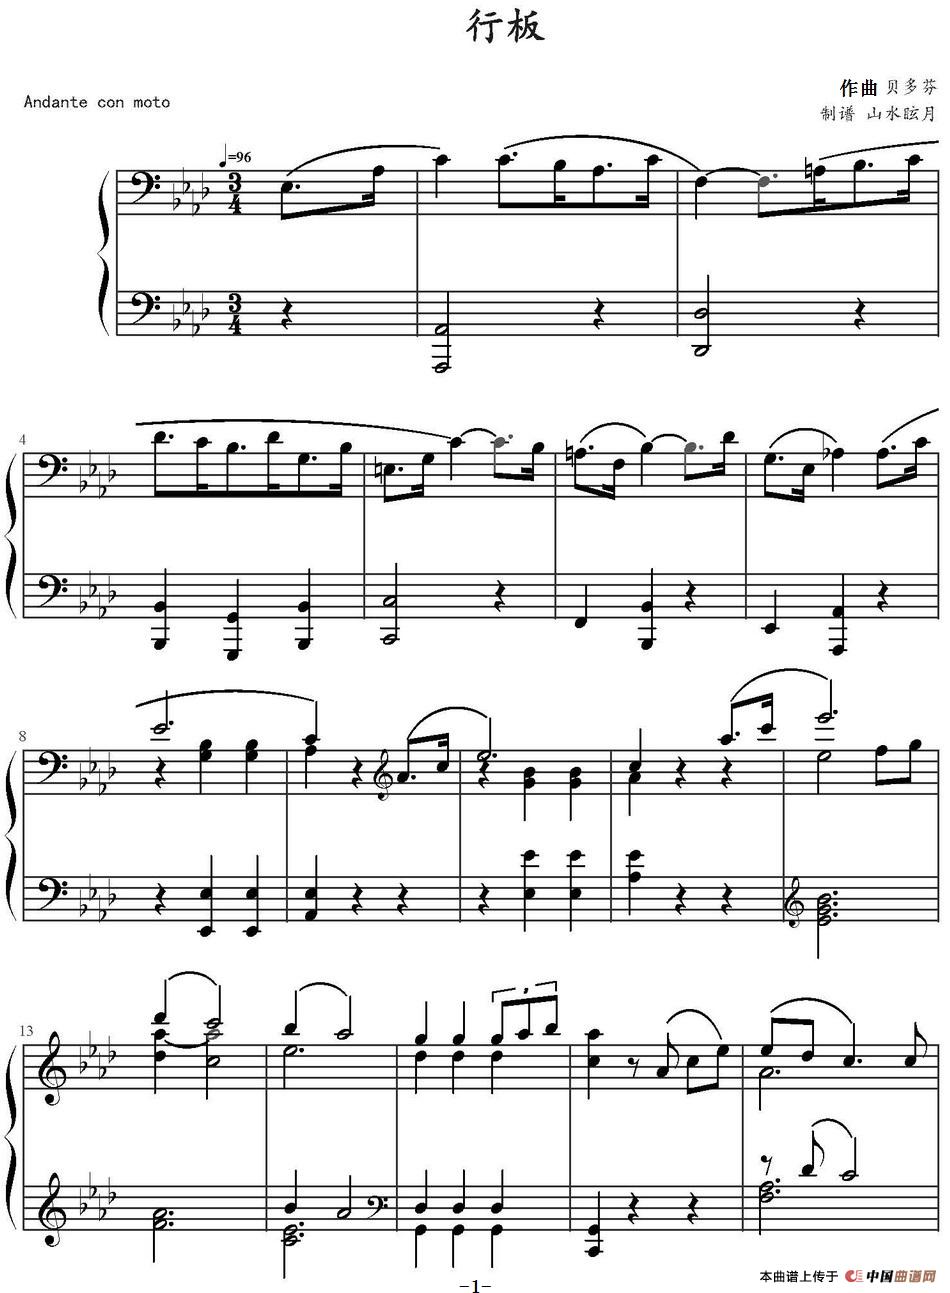 《行板》钢琴曲谱图分享